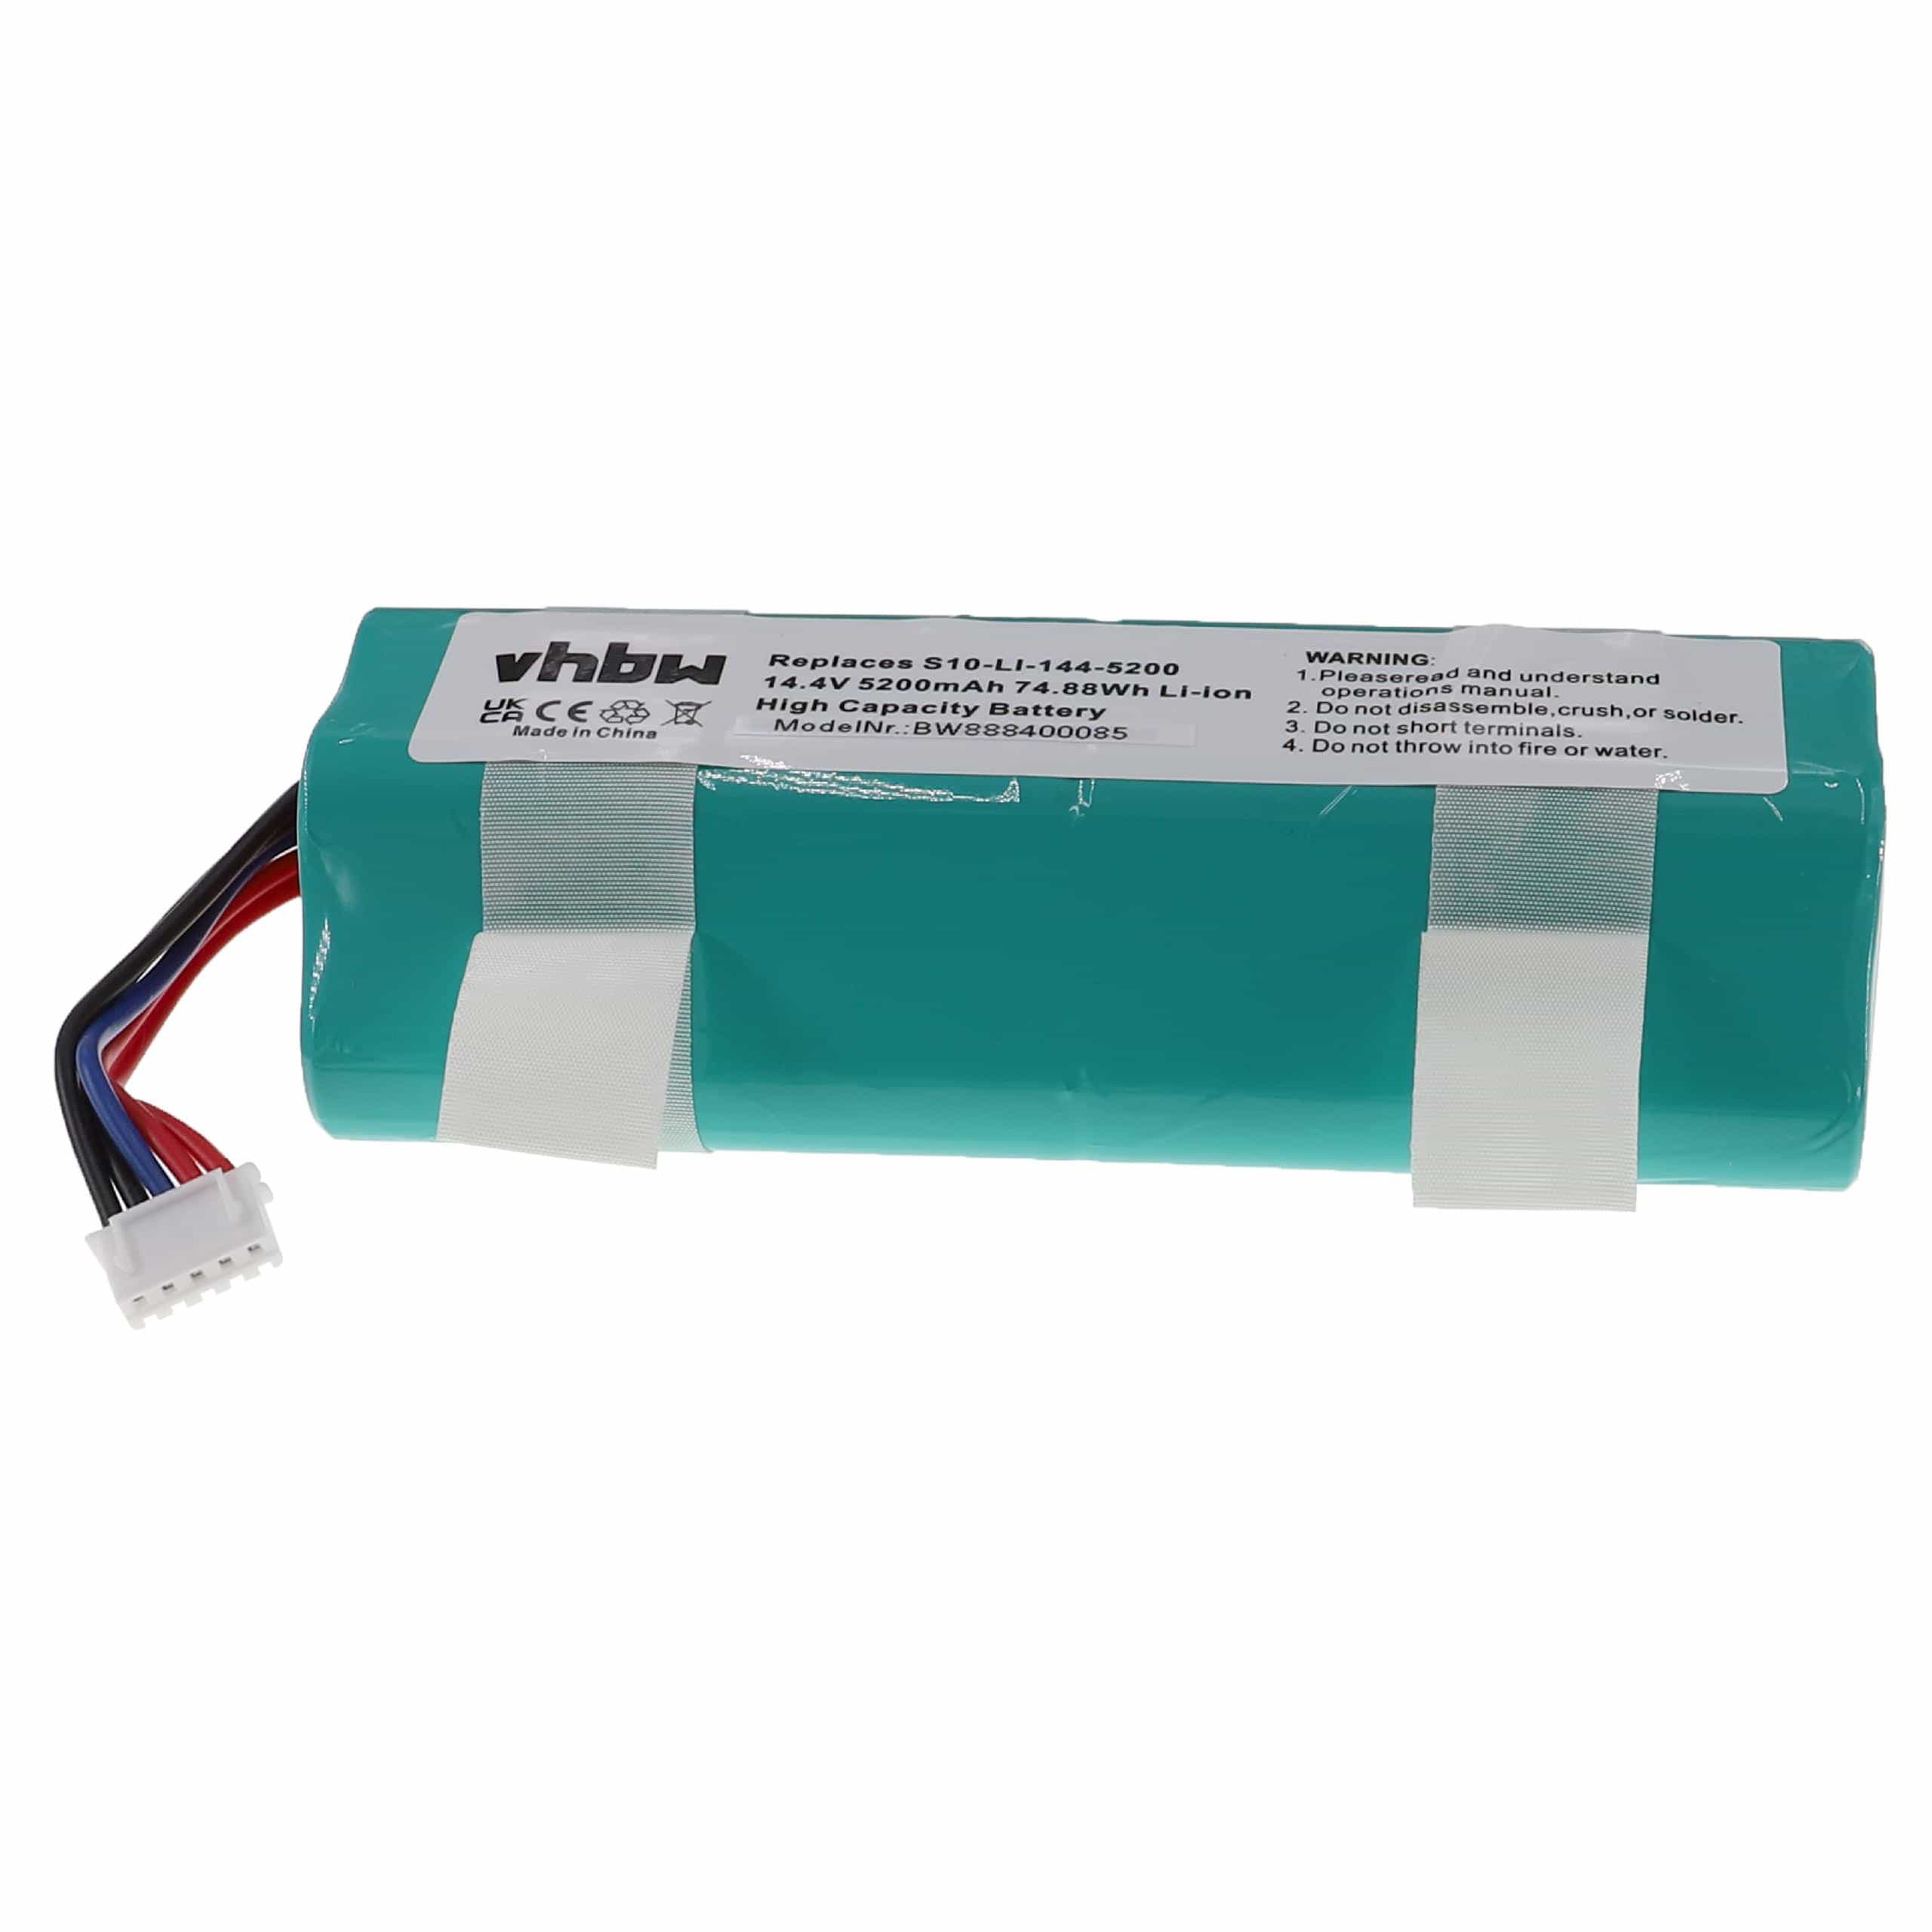 Batterie remplace Ecovacs 201-1913-4200, 201-1913-4201 pour robot aspirateur - 5200mAh 14,4V Li-ion, turquoise